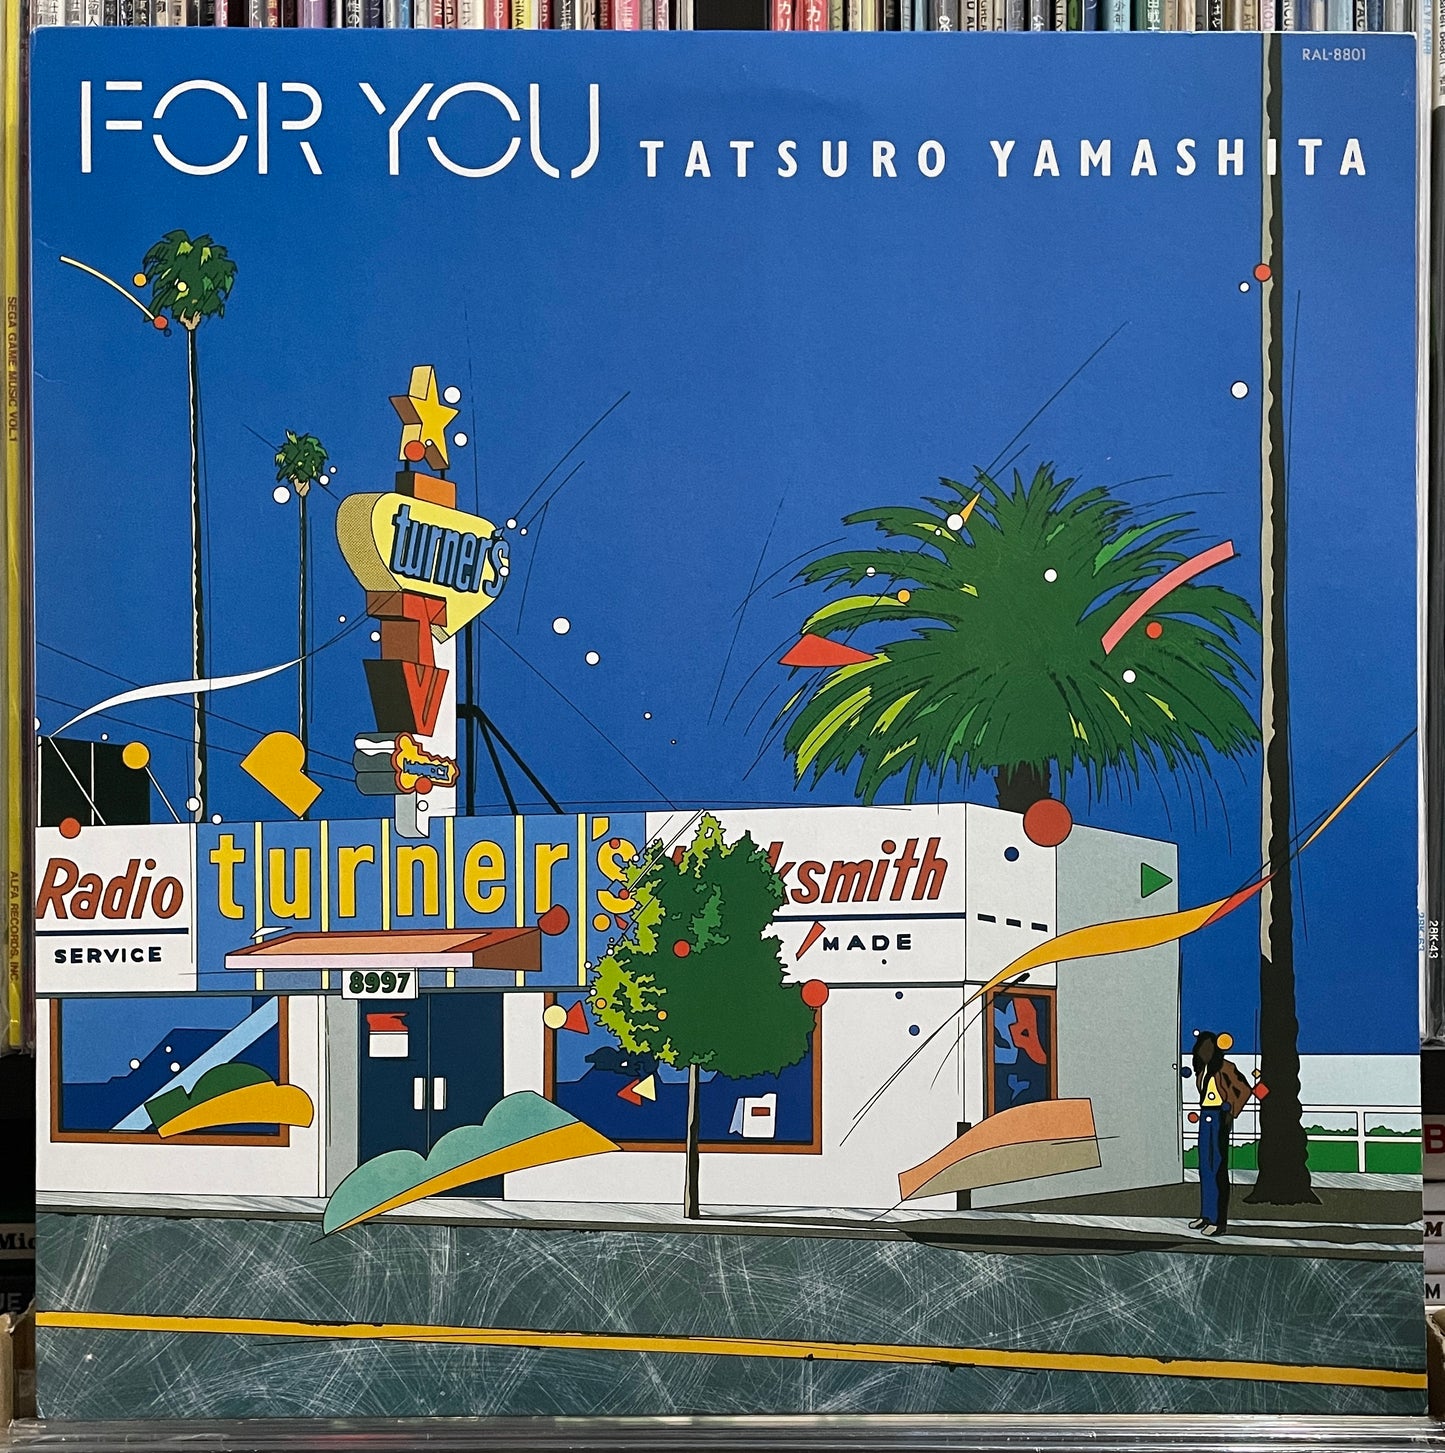 Tatsuro Yamashita “For You” (1982)